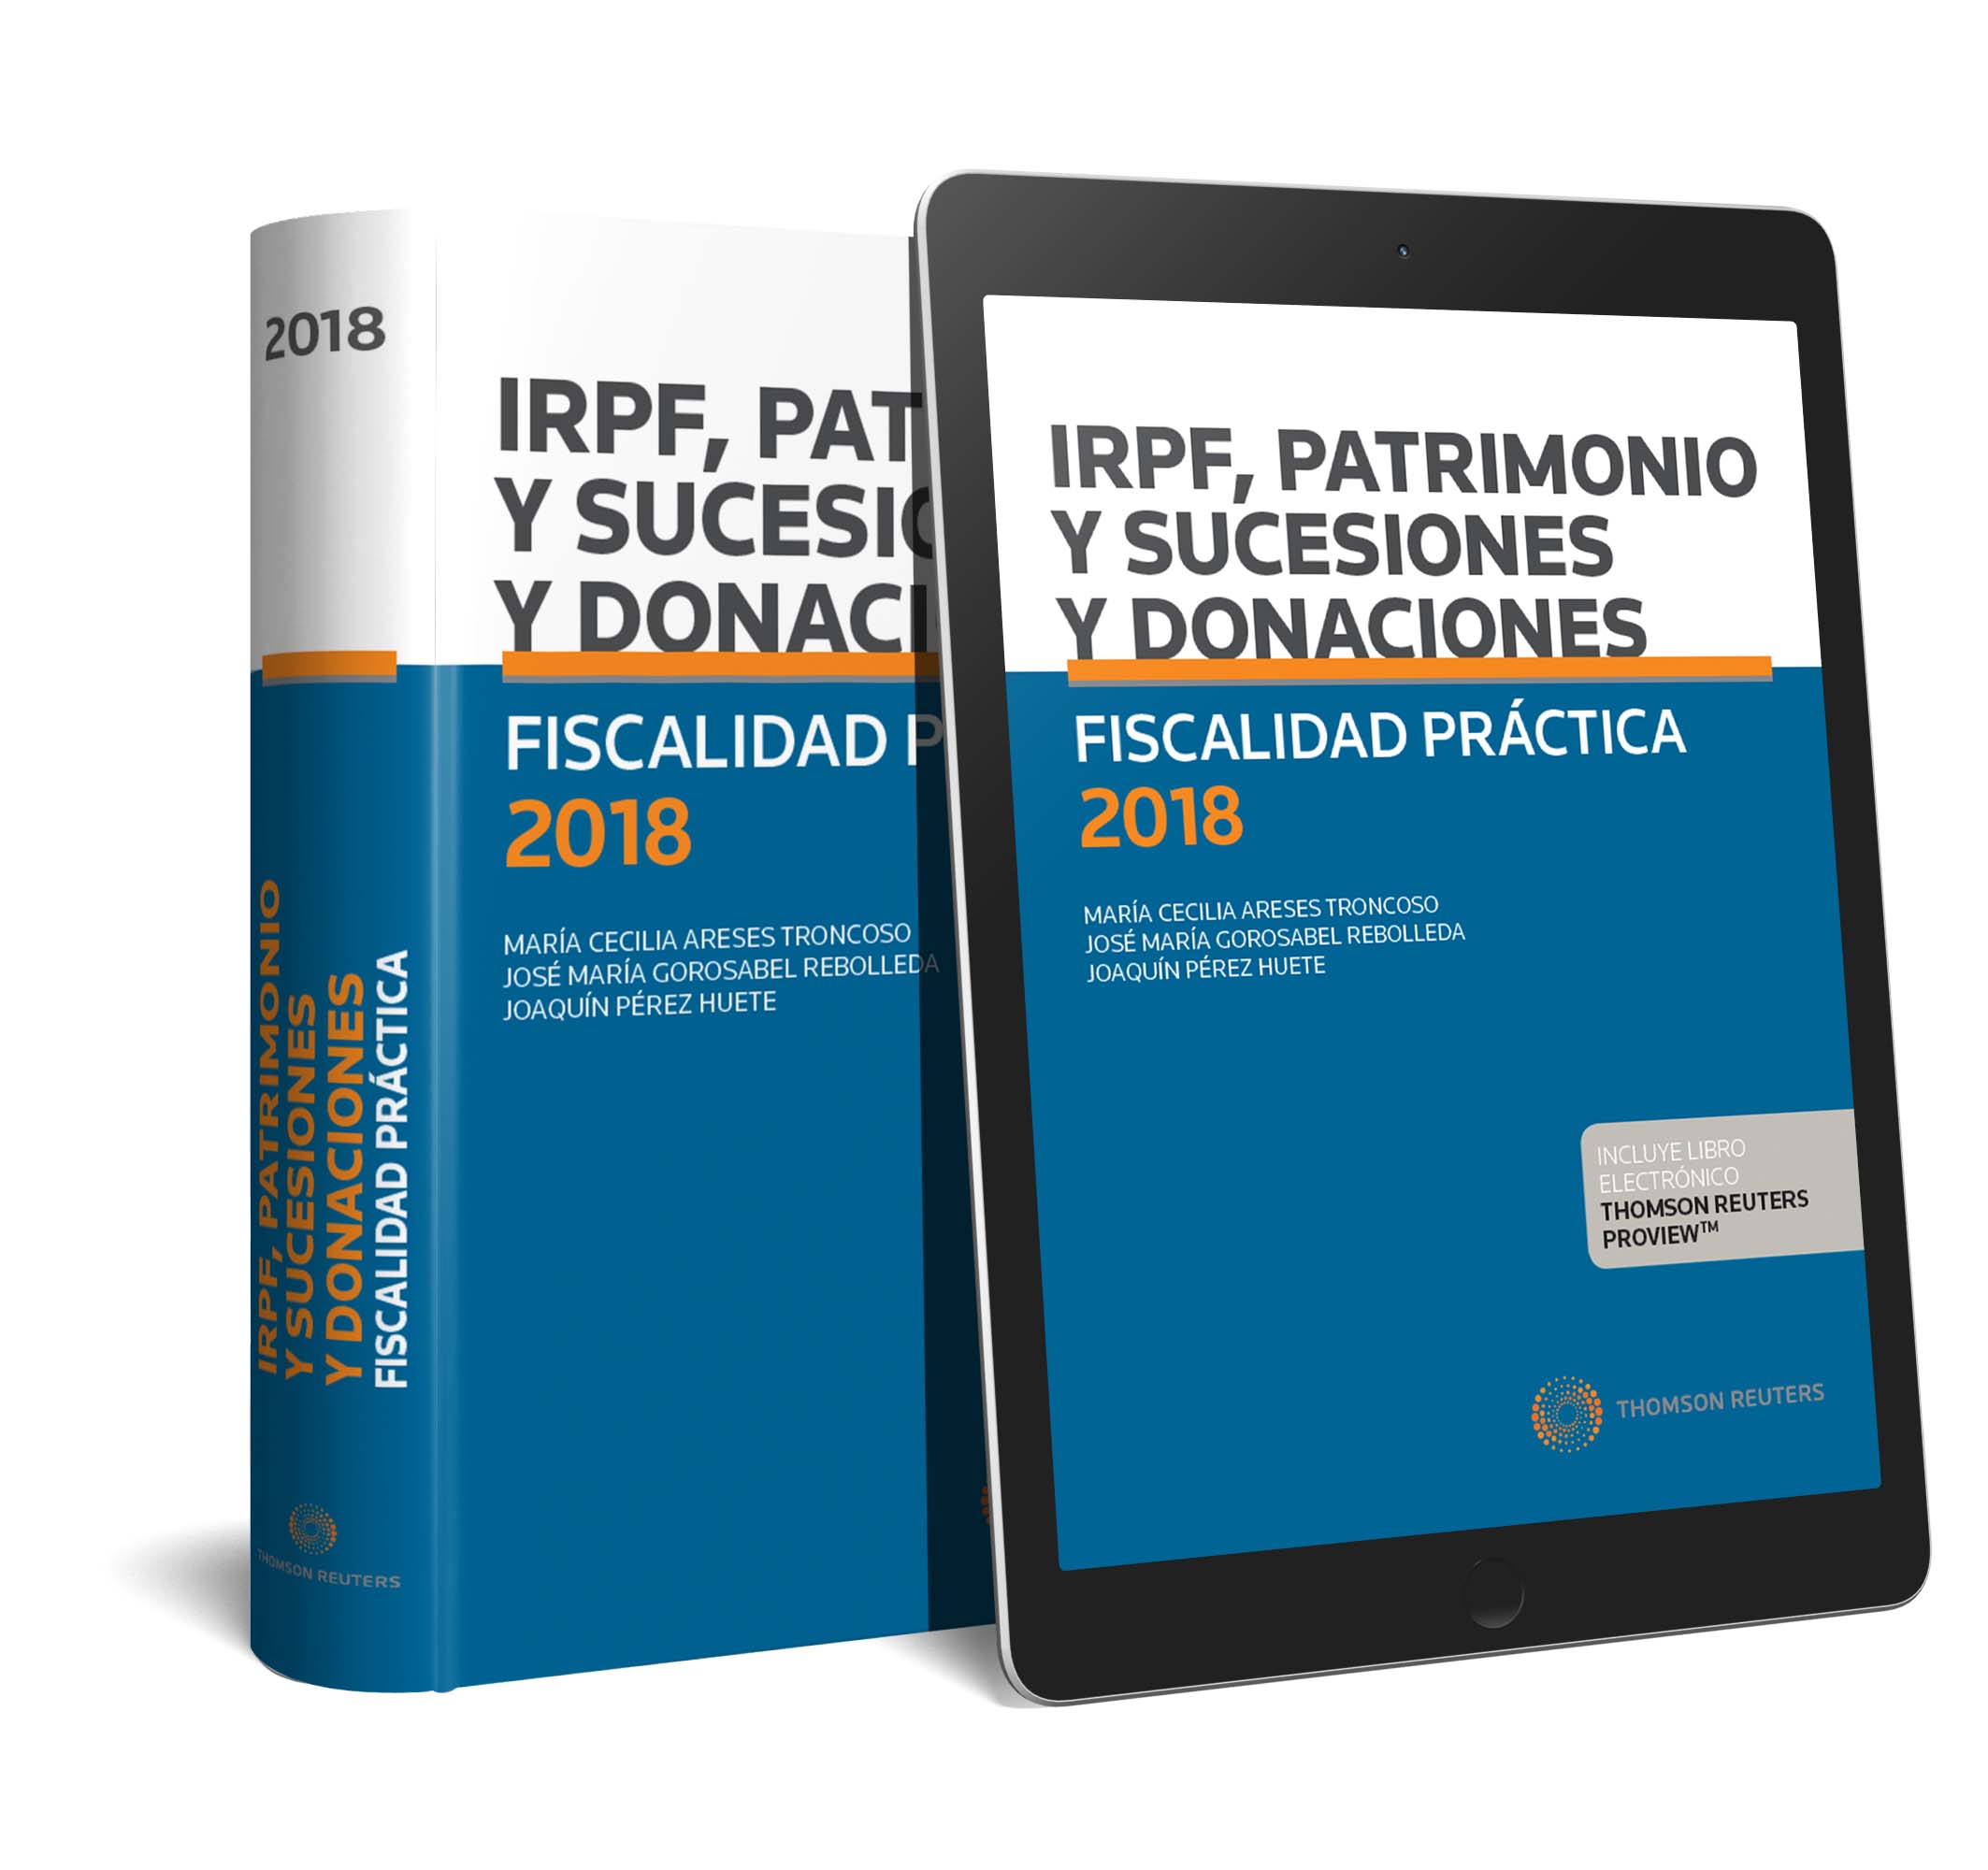 IRPF PATRIMONIO SUCESIONES Y DONACIONES FISCALIDAD PRACTICA 2018